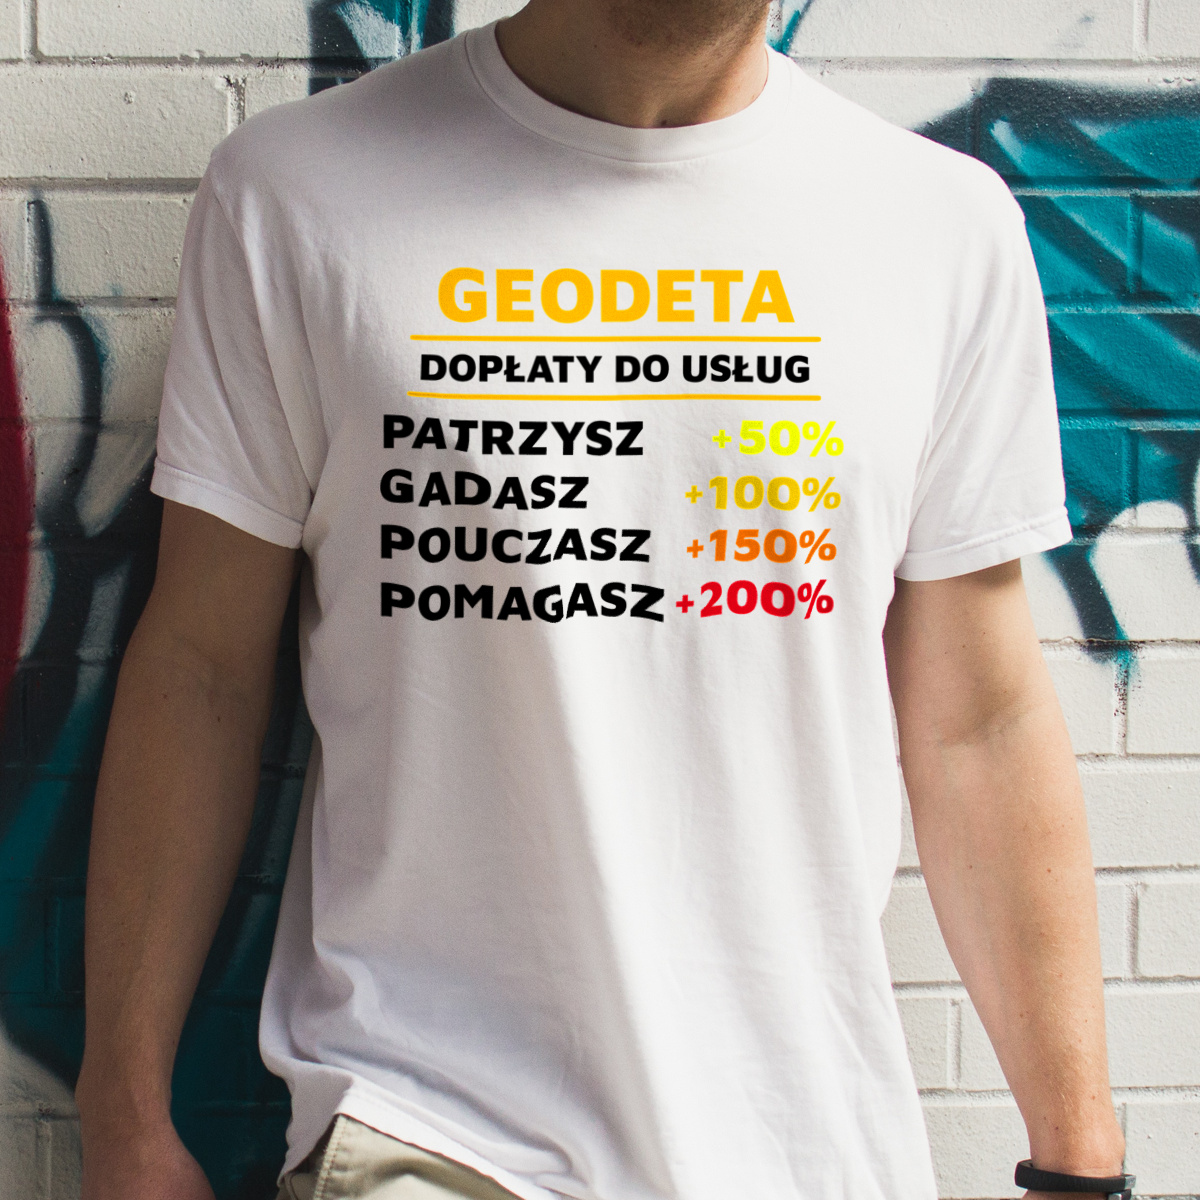 Dopłaty Do Usług Geodeta - Męska Koszulka Biała